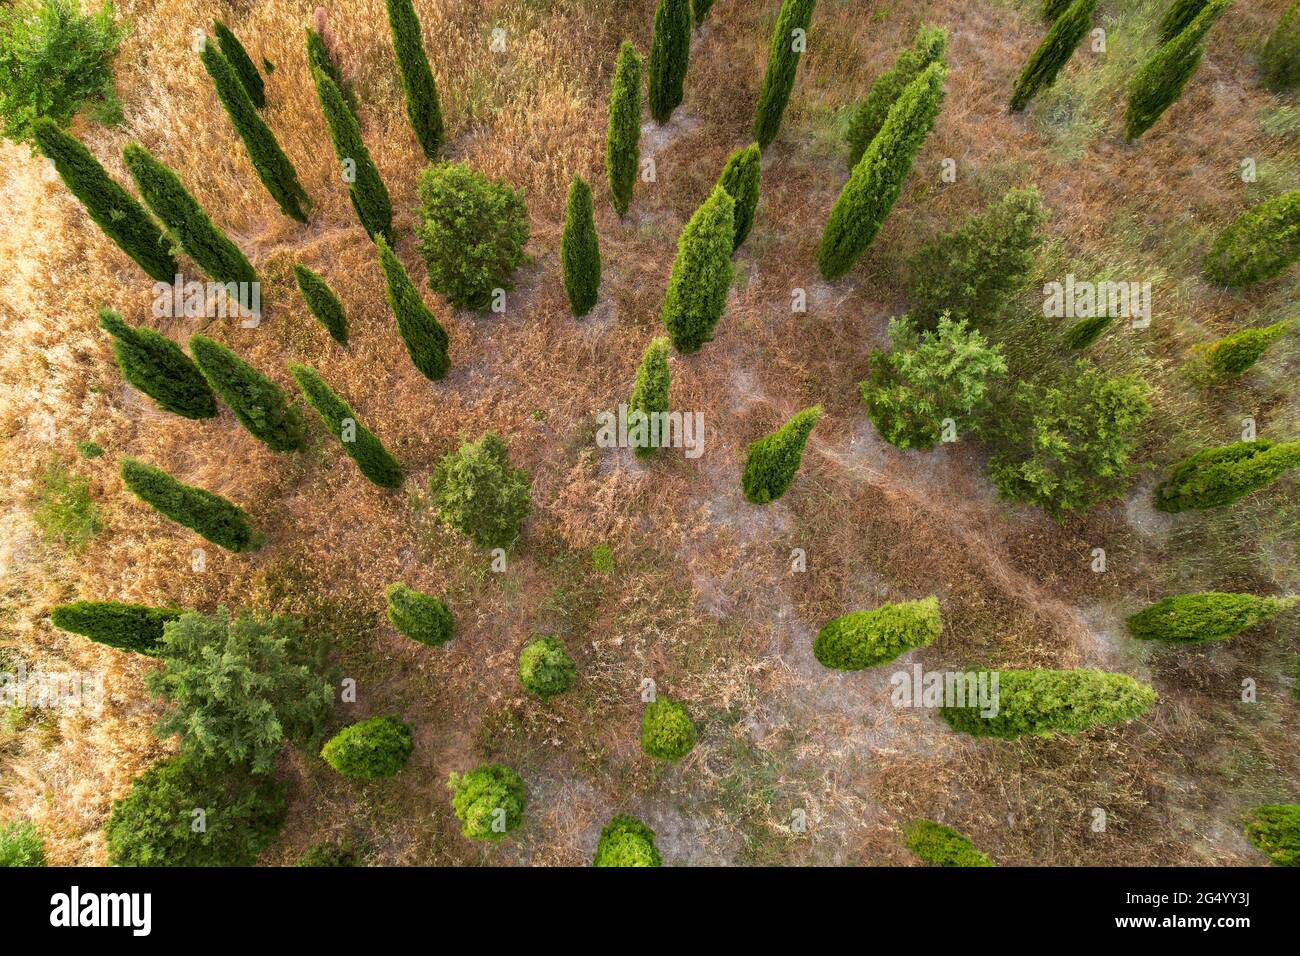 Bella vista della foresta toscana Italia dall'alto fotografata con un drone.  Fotografia dei droni, Toscana, Siena Foto stock - Alamy